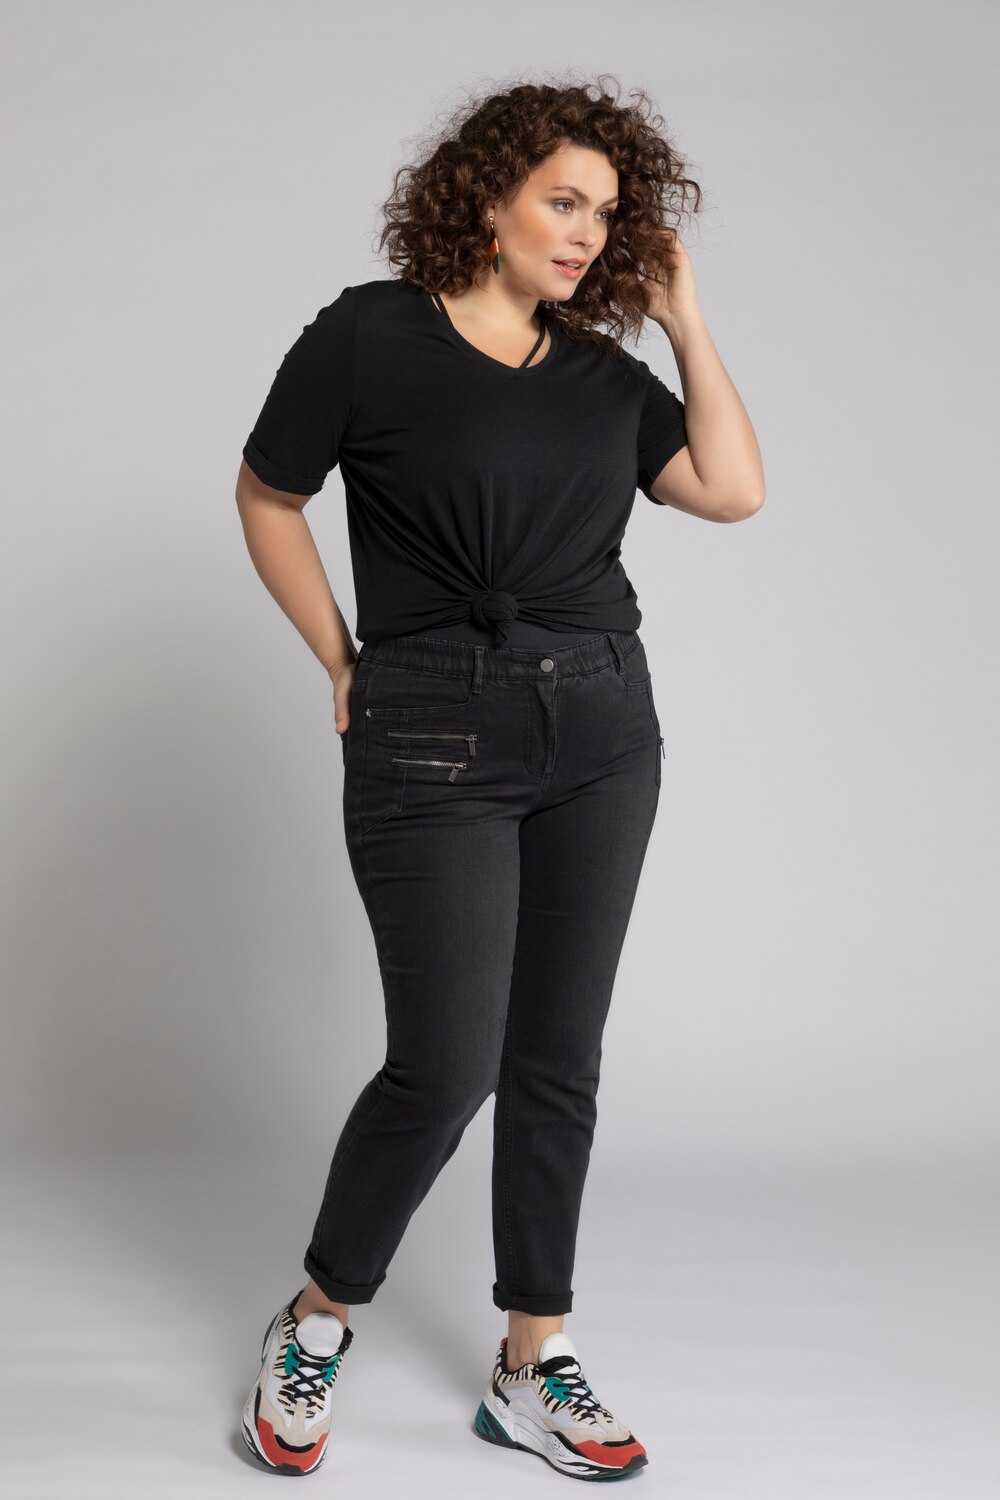 Grote Maten jeans Sarah, Dames, zwart, Maat: 108, Katoen/Polyester/Synthetische vezels, Ulla Popken